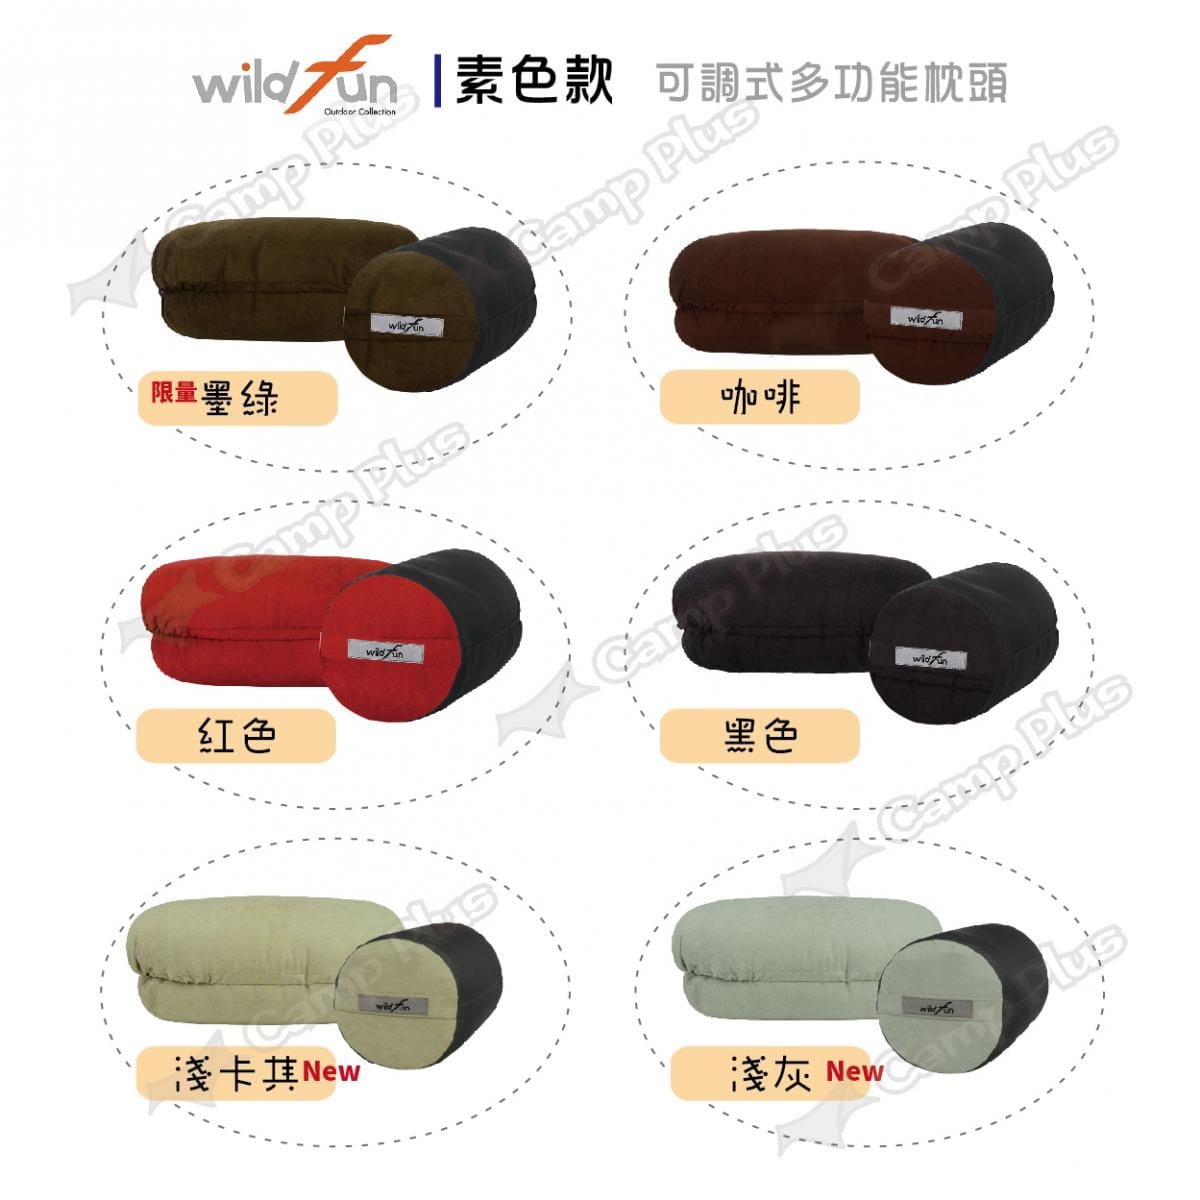 【wildfun野放】專利可調式功能枕頭 (悠遊戶外) 1